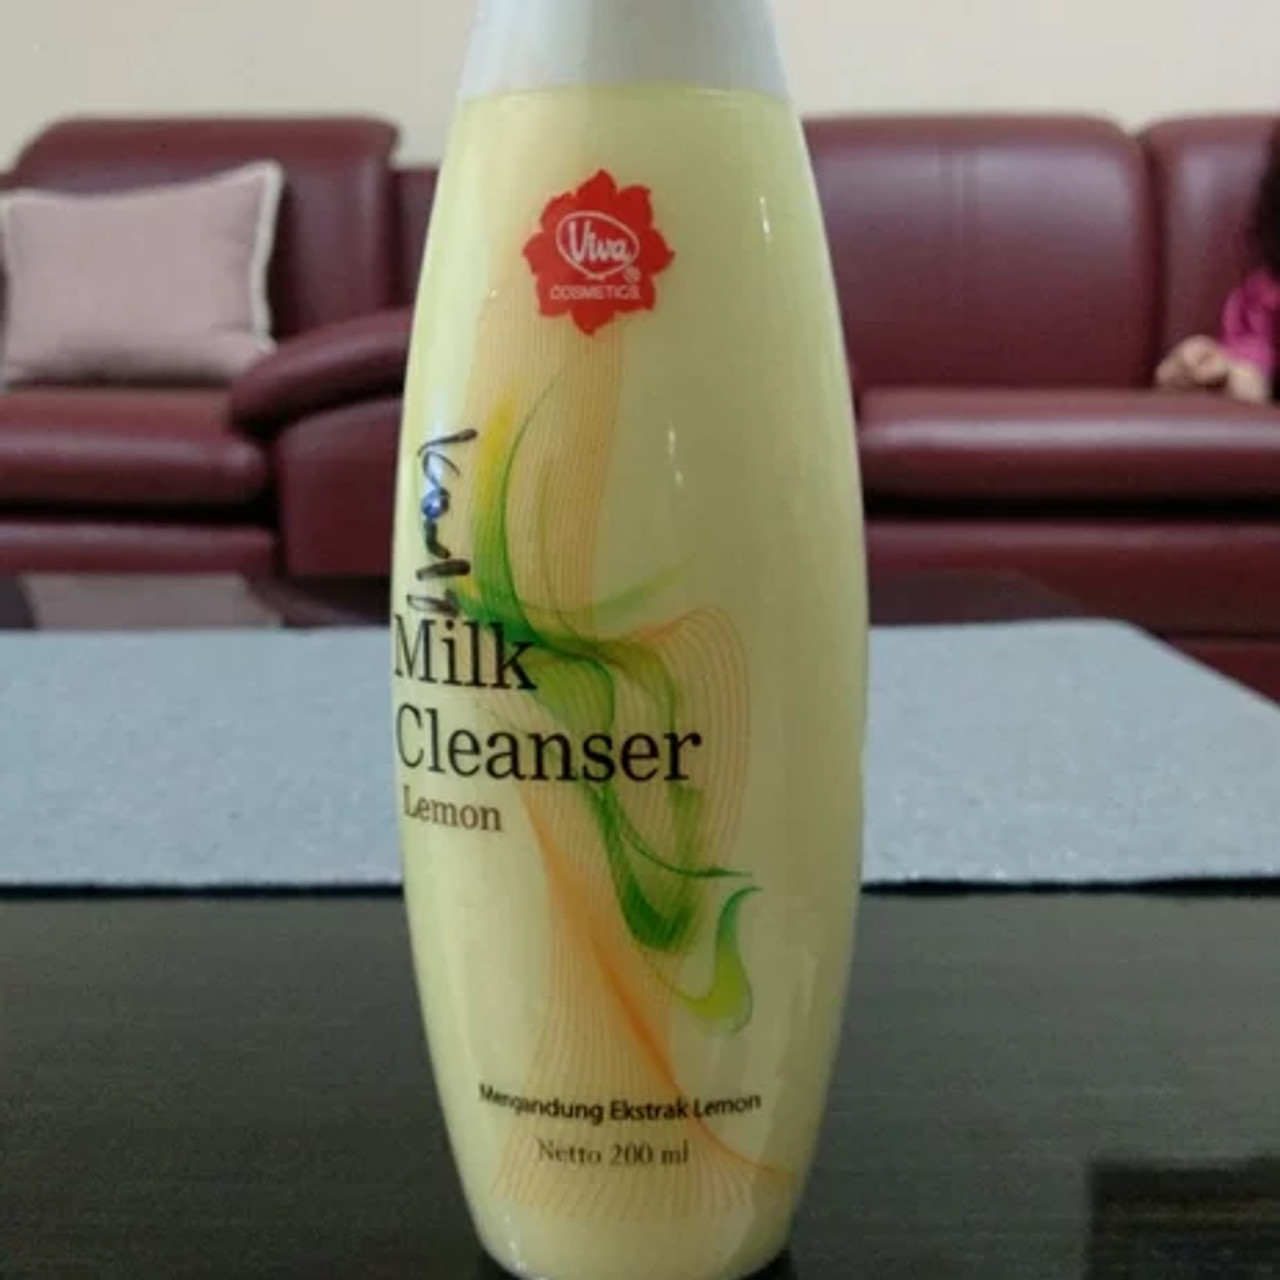 Viva Milk Cleanser Lemon, 200ml